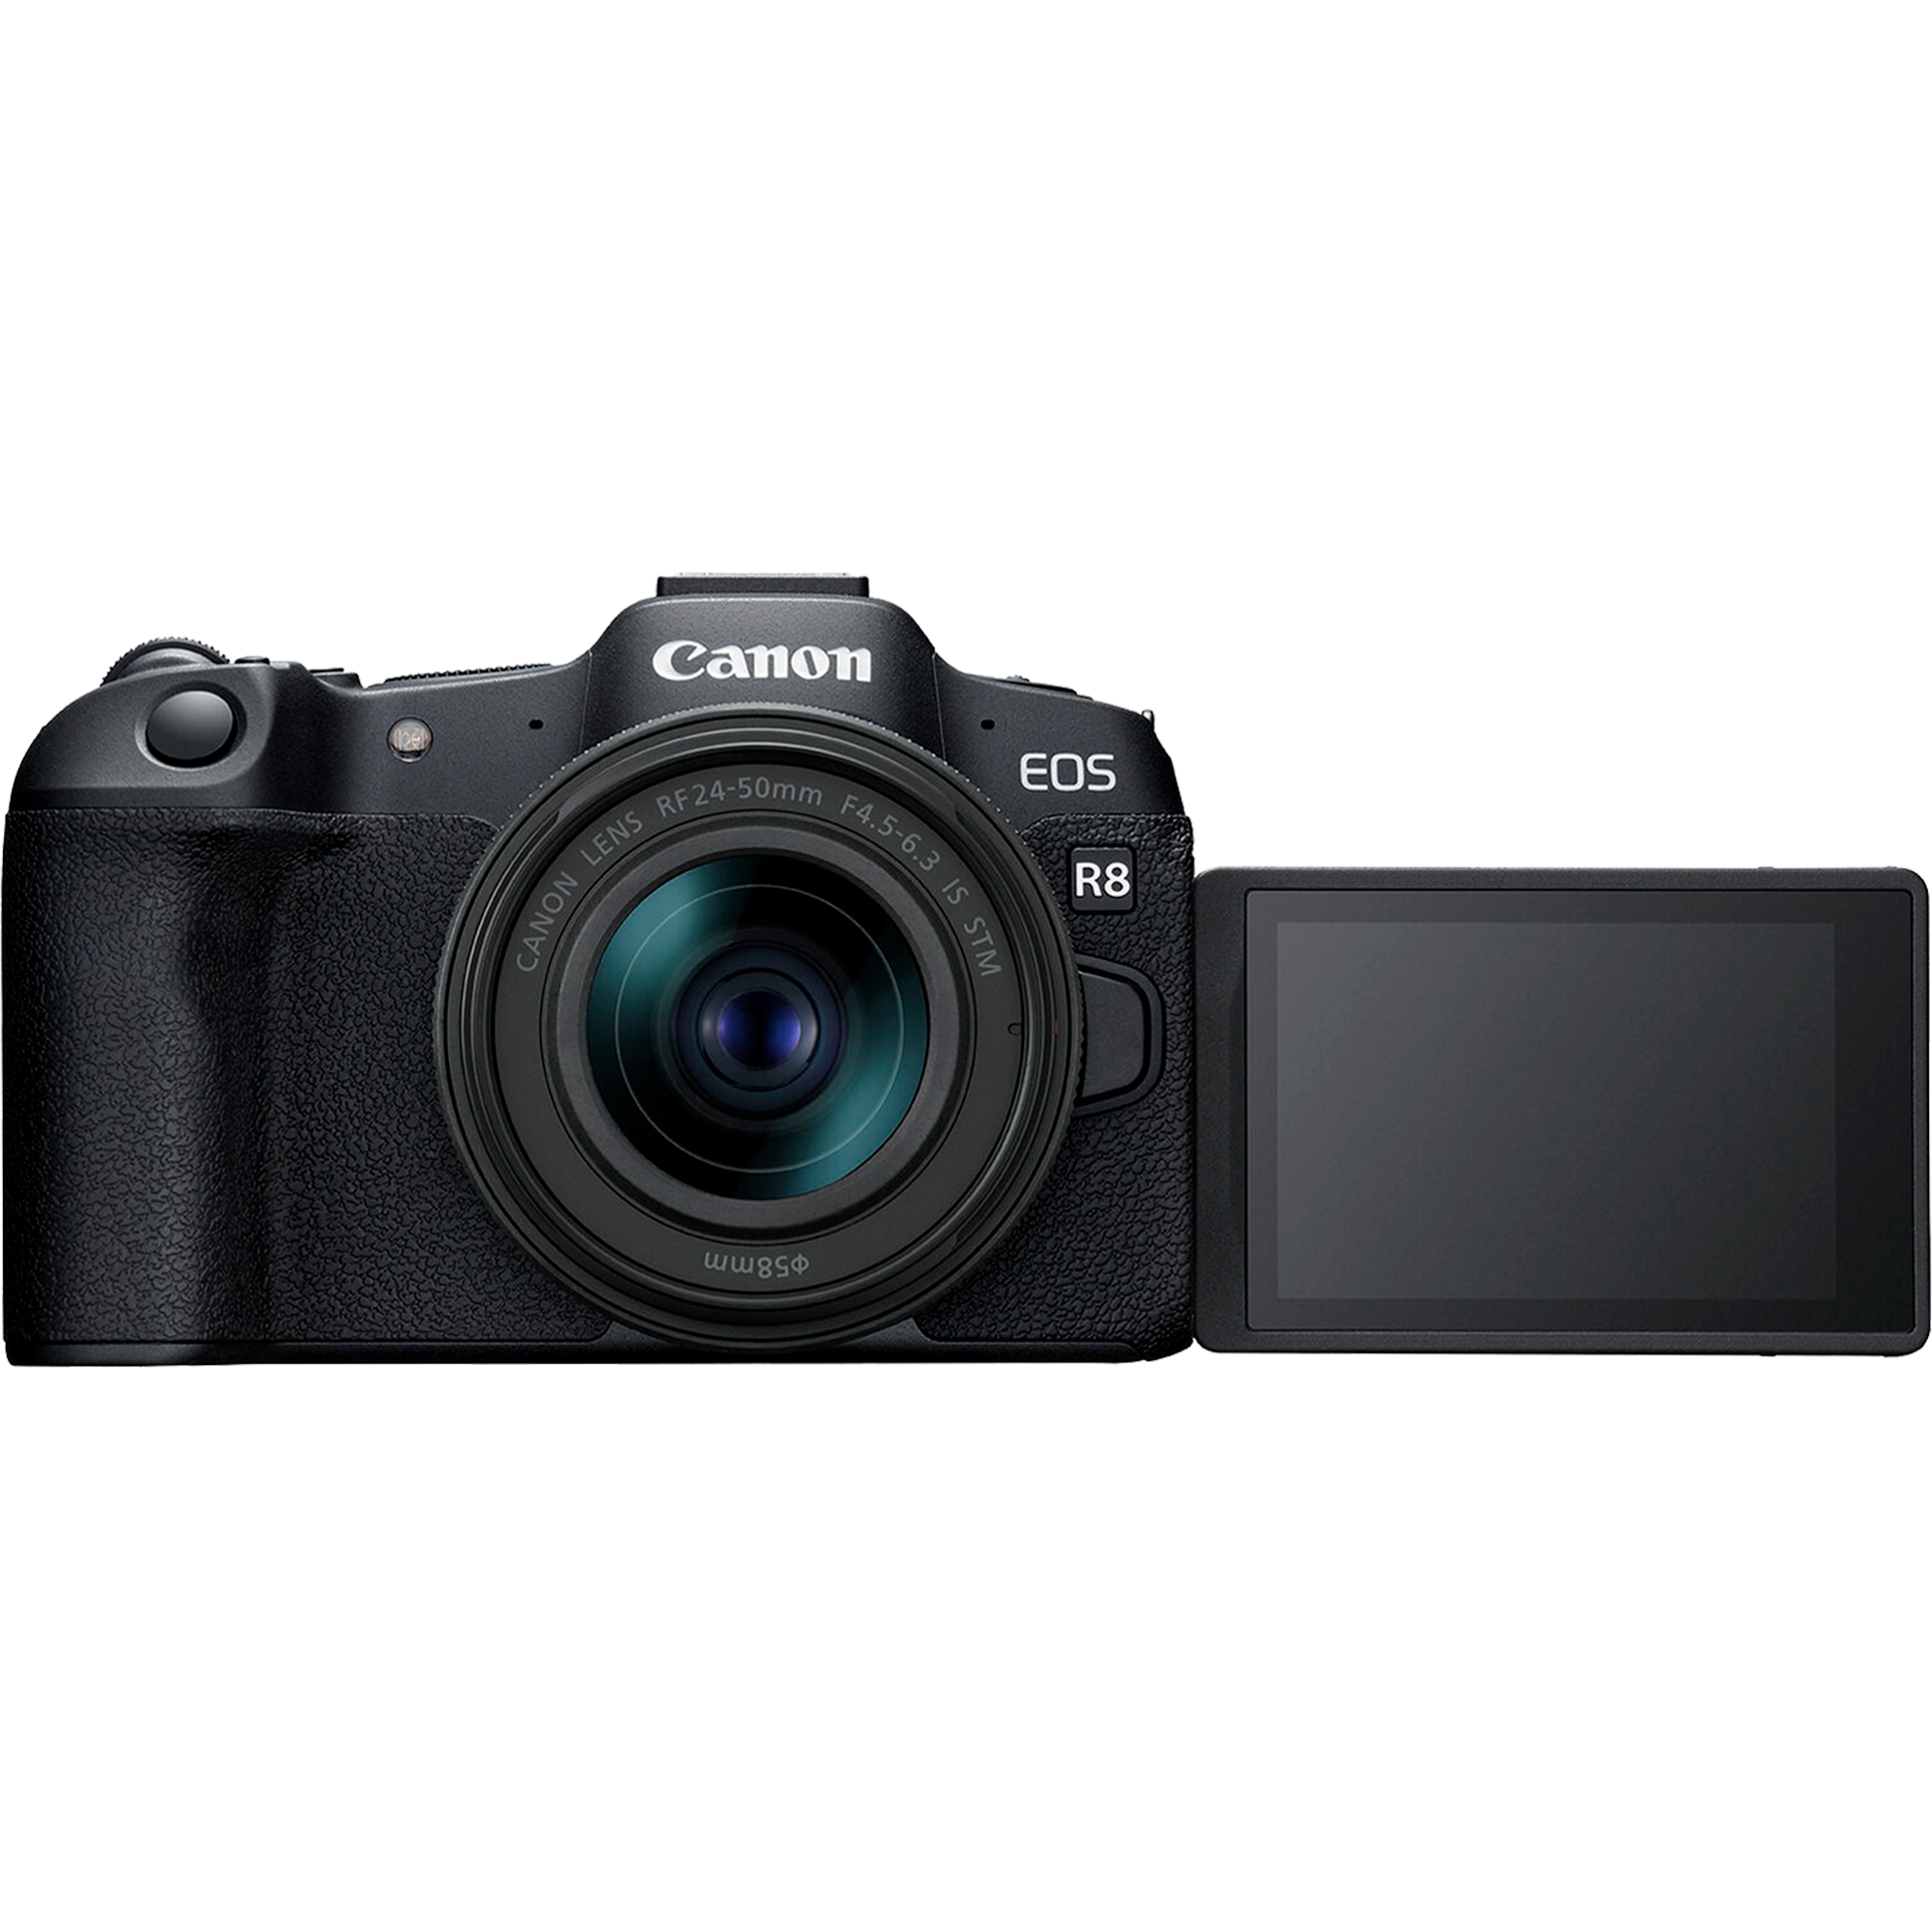 מצלמה דיגיטלית ללא מראה הכוללת עדשה Canon EOS R8 RF 24-50mm f/4.5-6.3 IS STM - צבע שחור שלוש שנות אחריות ע